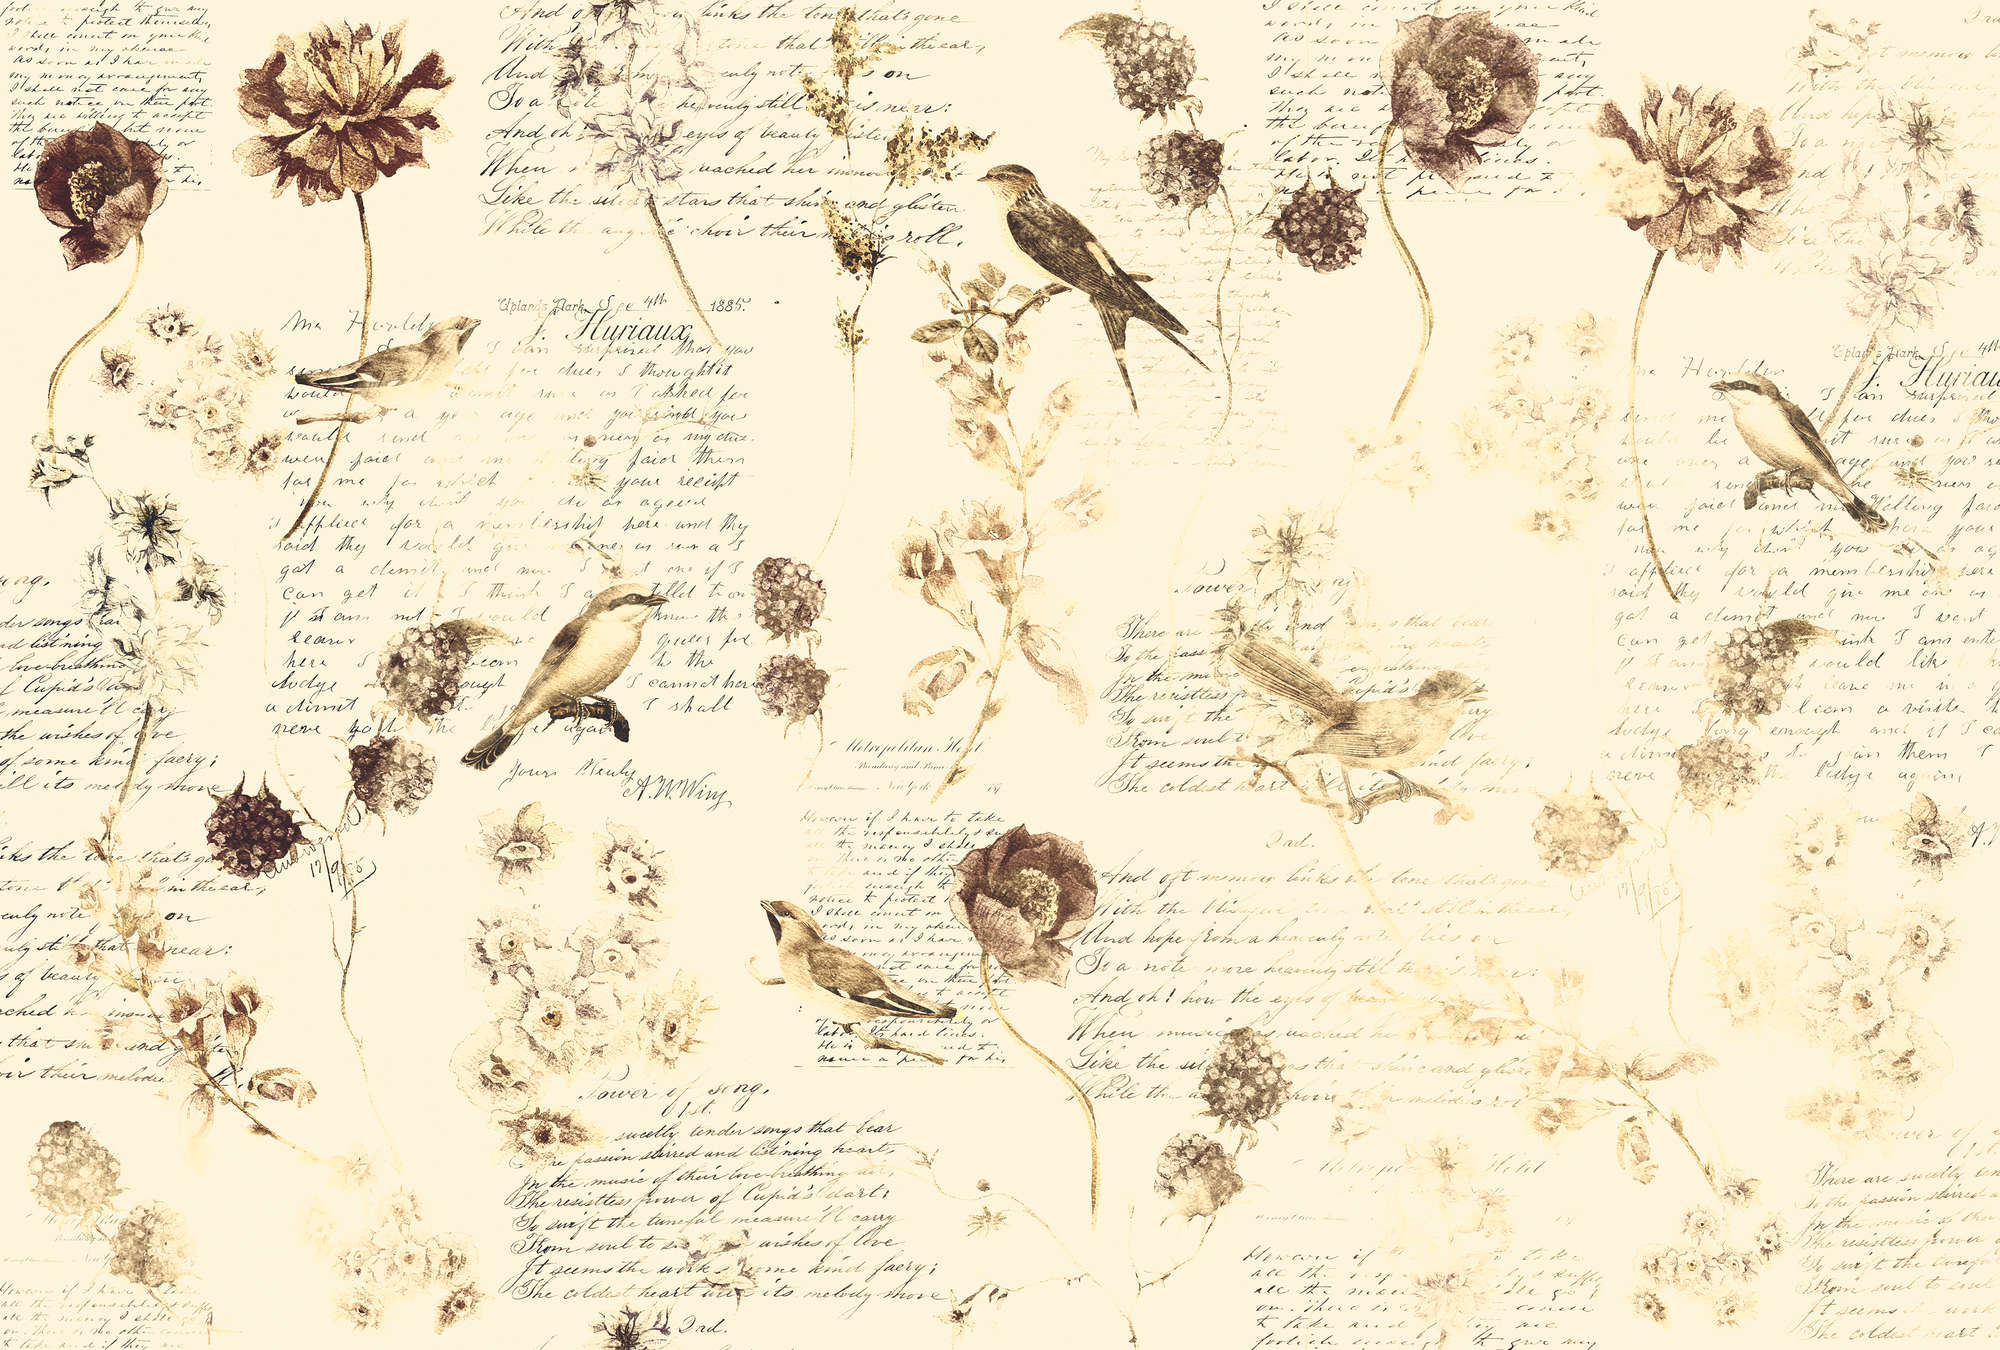             Papier peint panoramique romantique avec fleurs & décor manuscrit - crème, marron, beige
        